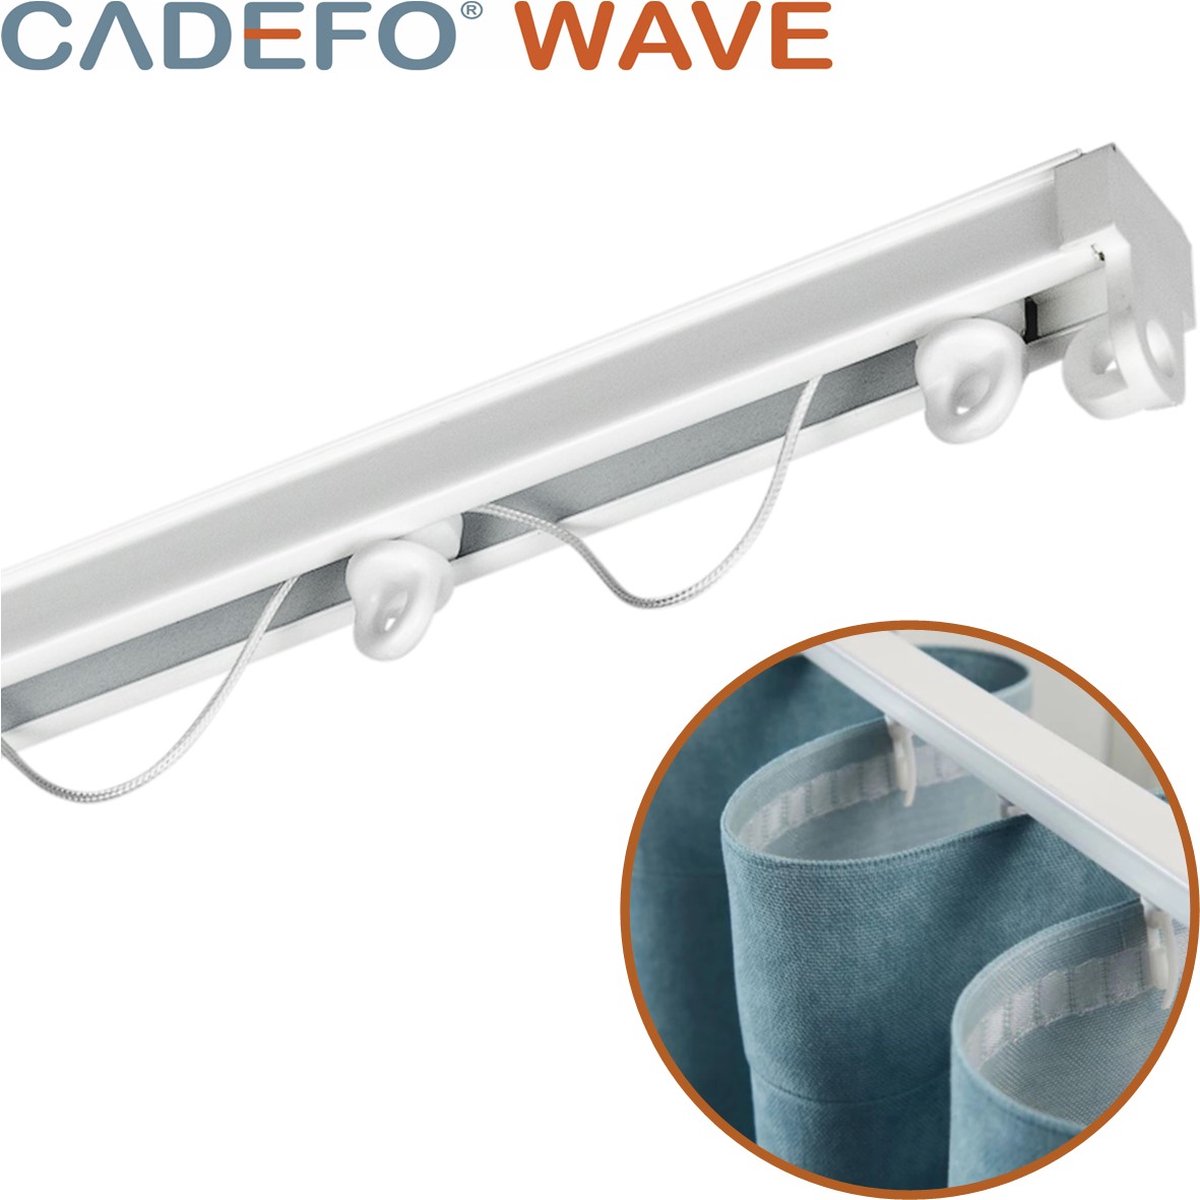 CADEFO WAVE (501 - 550 cm) Gordijnrails - Compleet op maat! - UIT 1 STUK - Leverbaar tot 6 meter - Plafondbevestiging - Lengte 548 cm